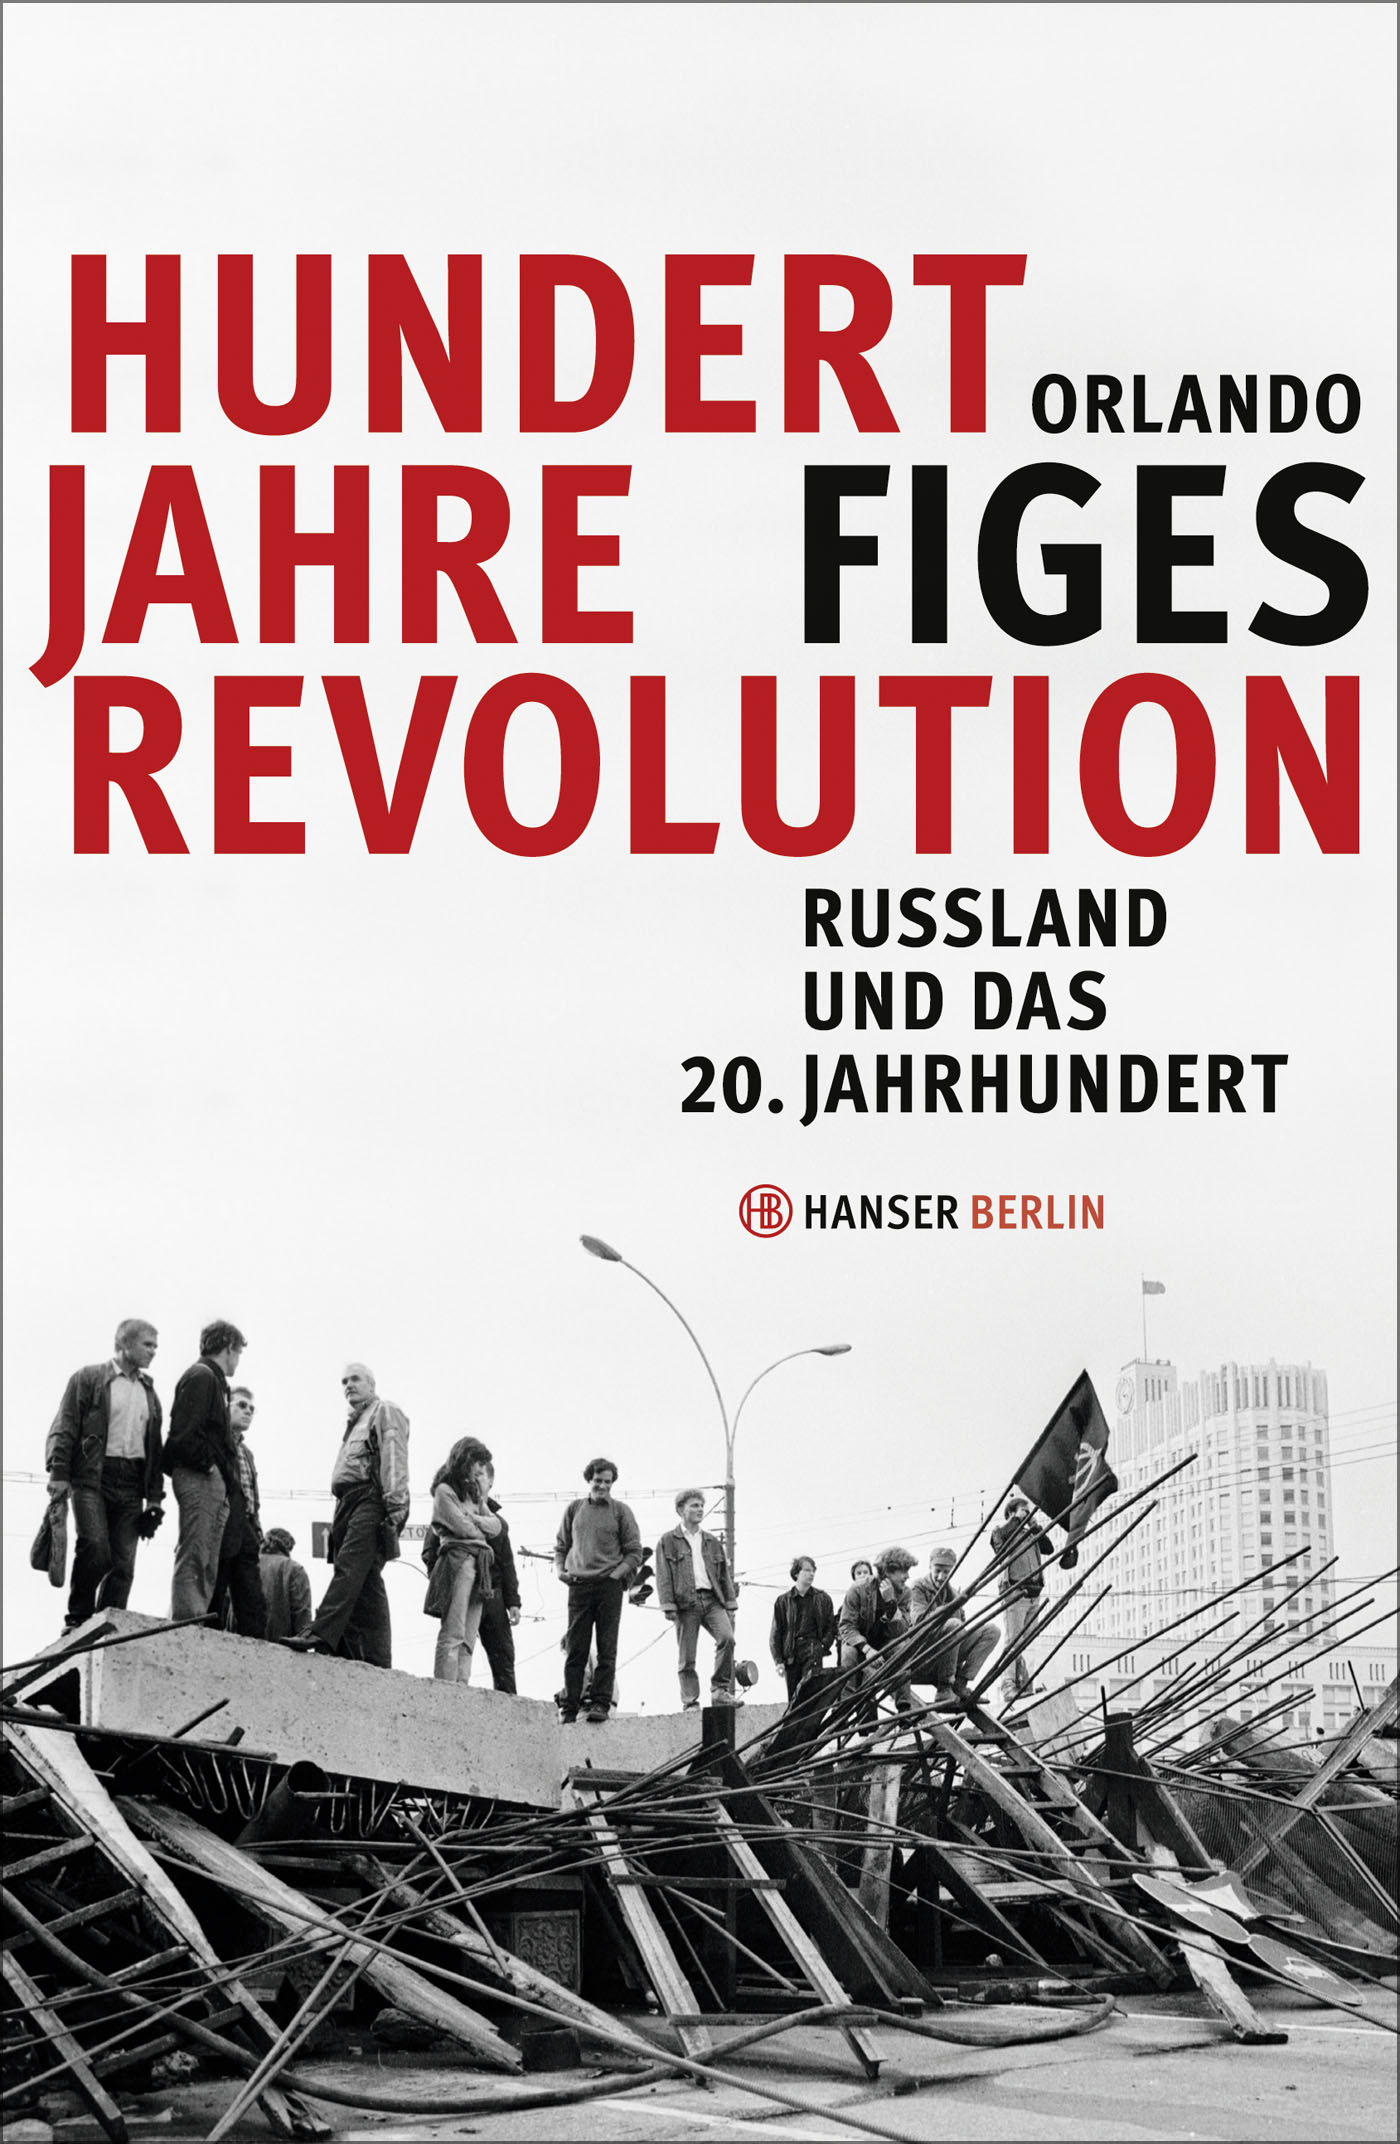 Orlando Figes. Hundert Jahre Revolution. Russland und das 20. Jahrhundert